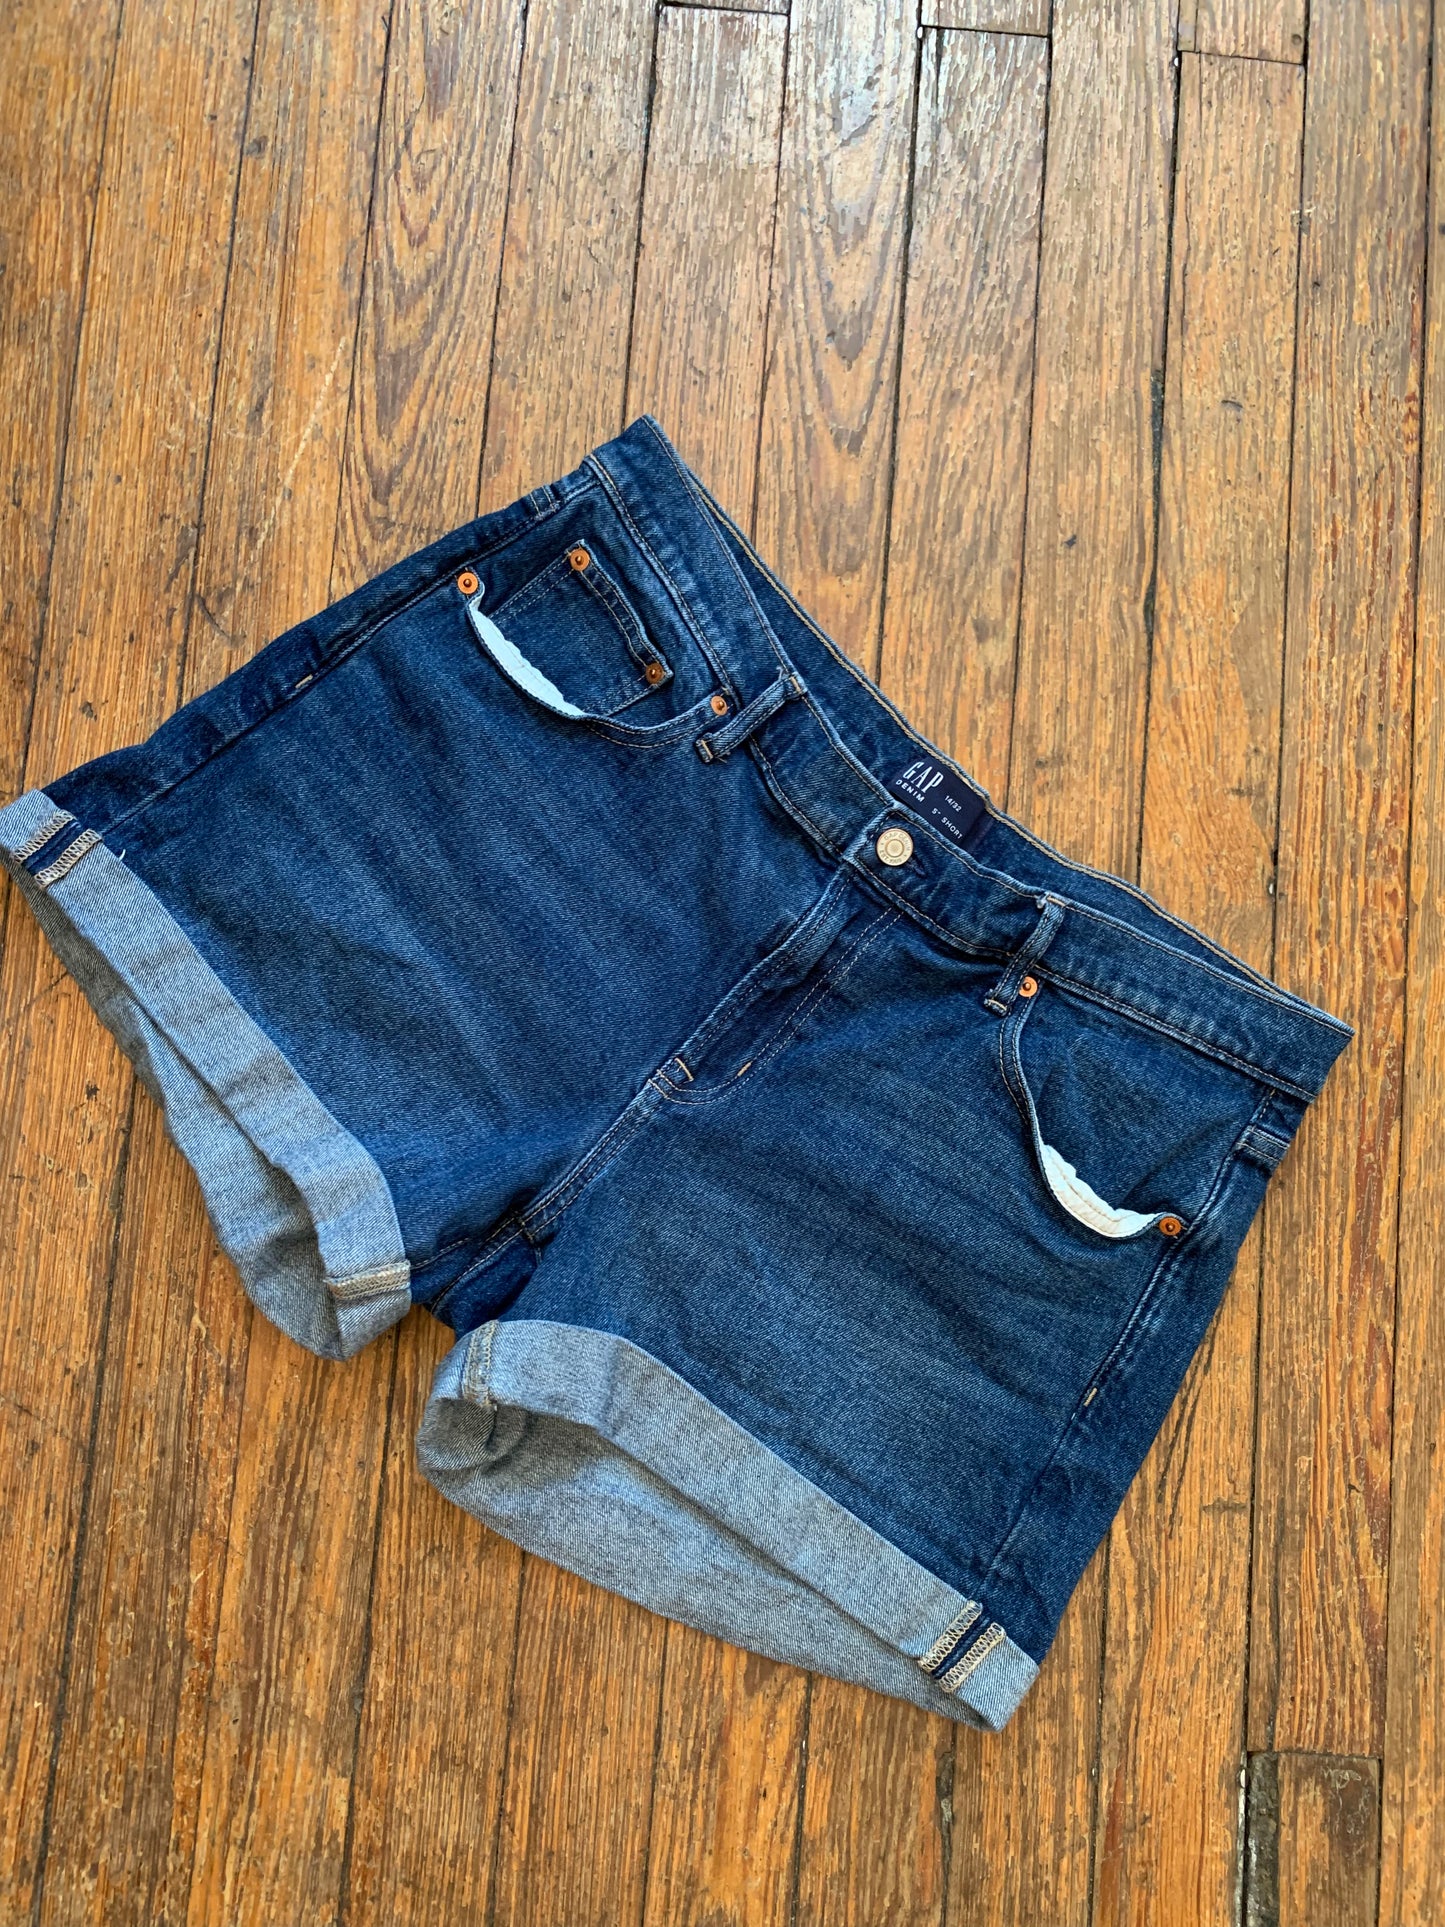 Medium Wash Blue Denim Shorts